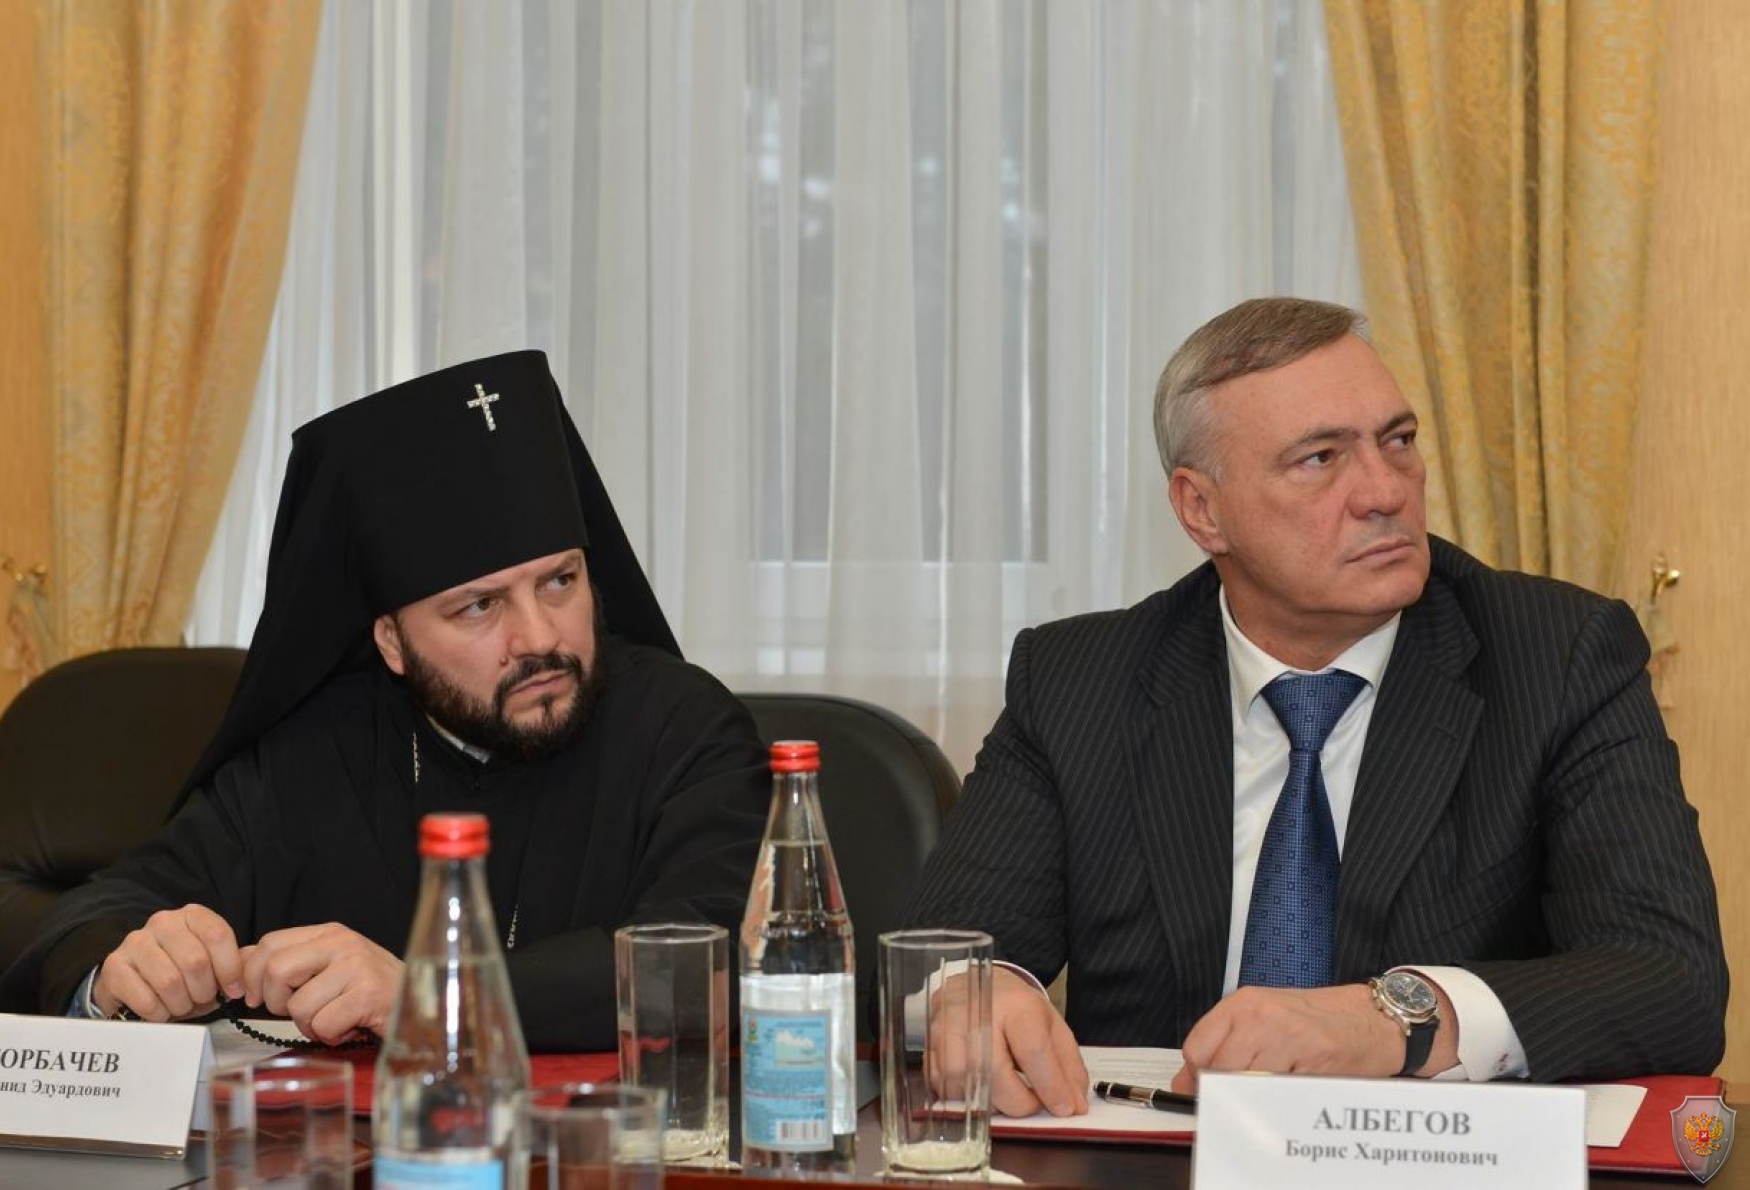 Глава Северной Осетии Вячеслав Битаров провел выездное заседание Антитеррористической комиссии в РСО-Алания